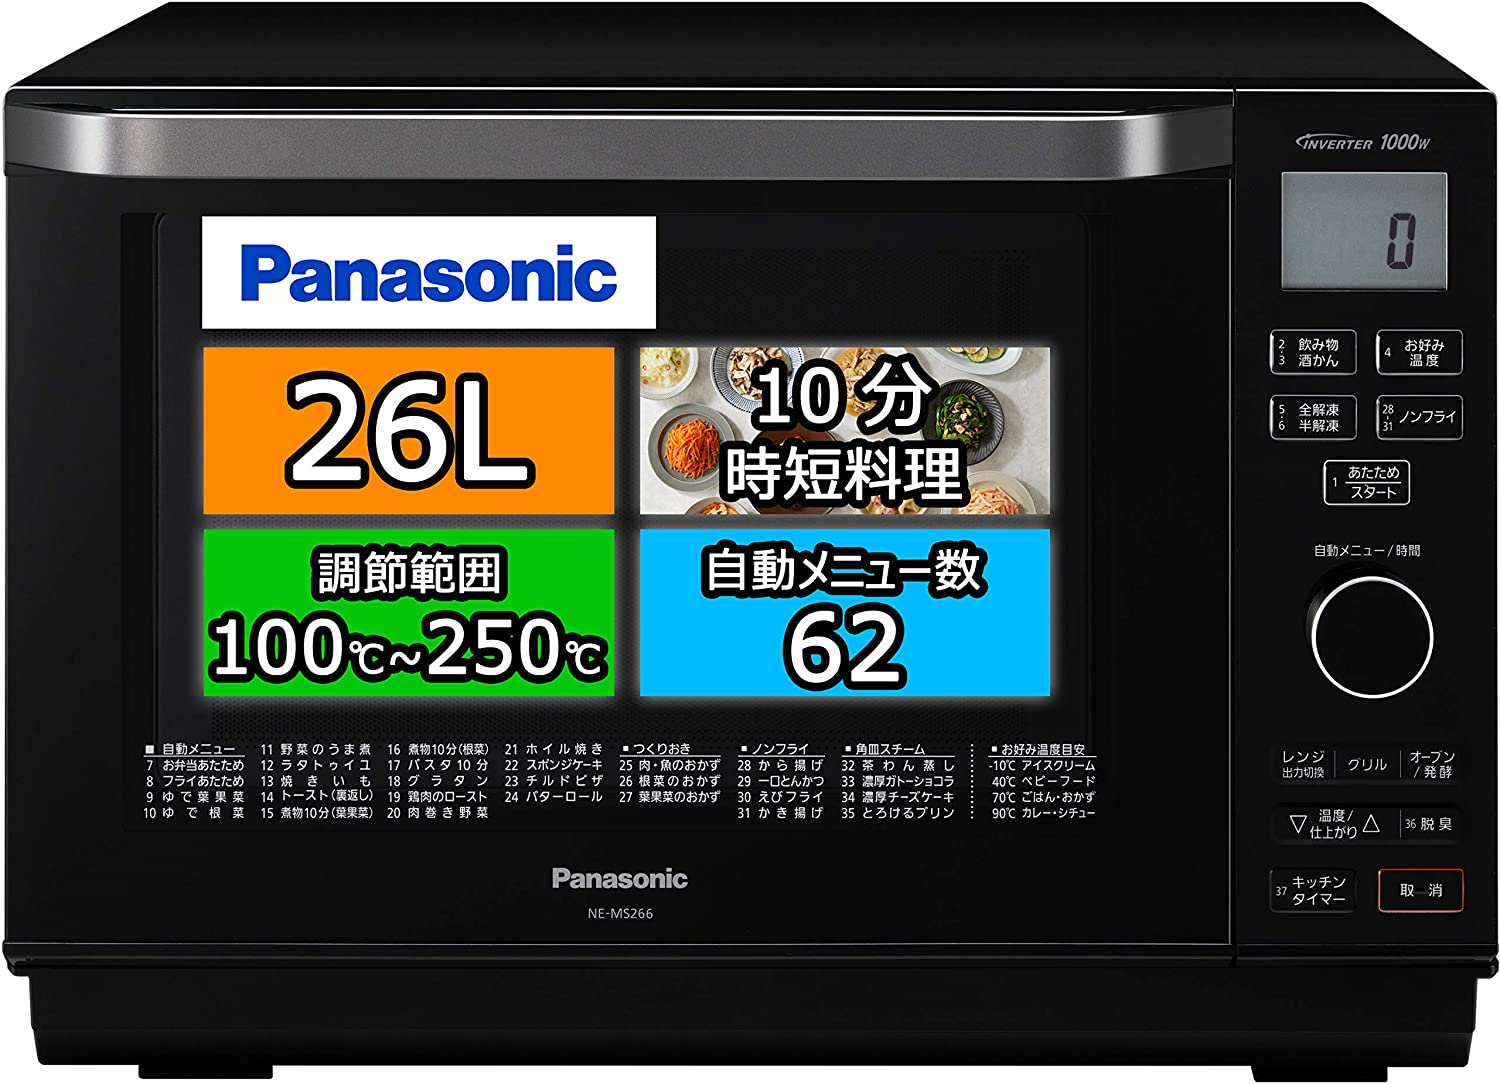 Panasonic(パナソニック) オーブンレンジ NE-MS266